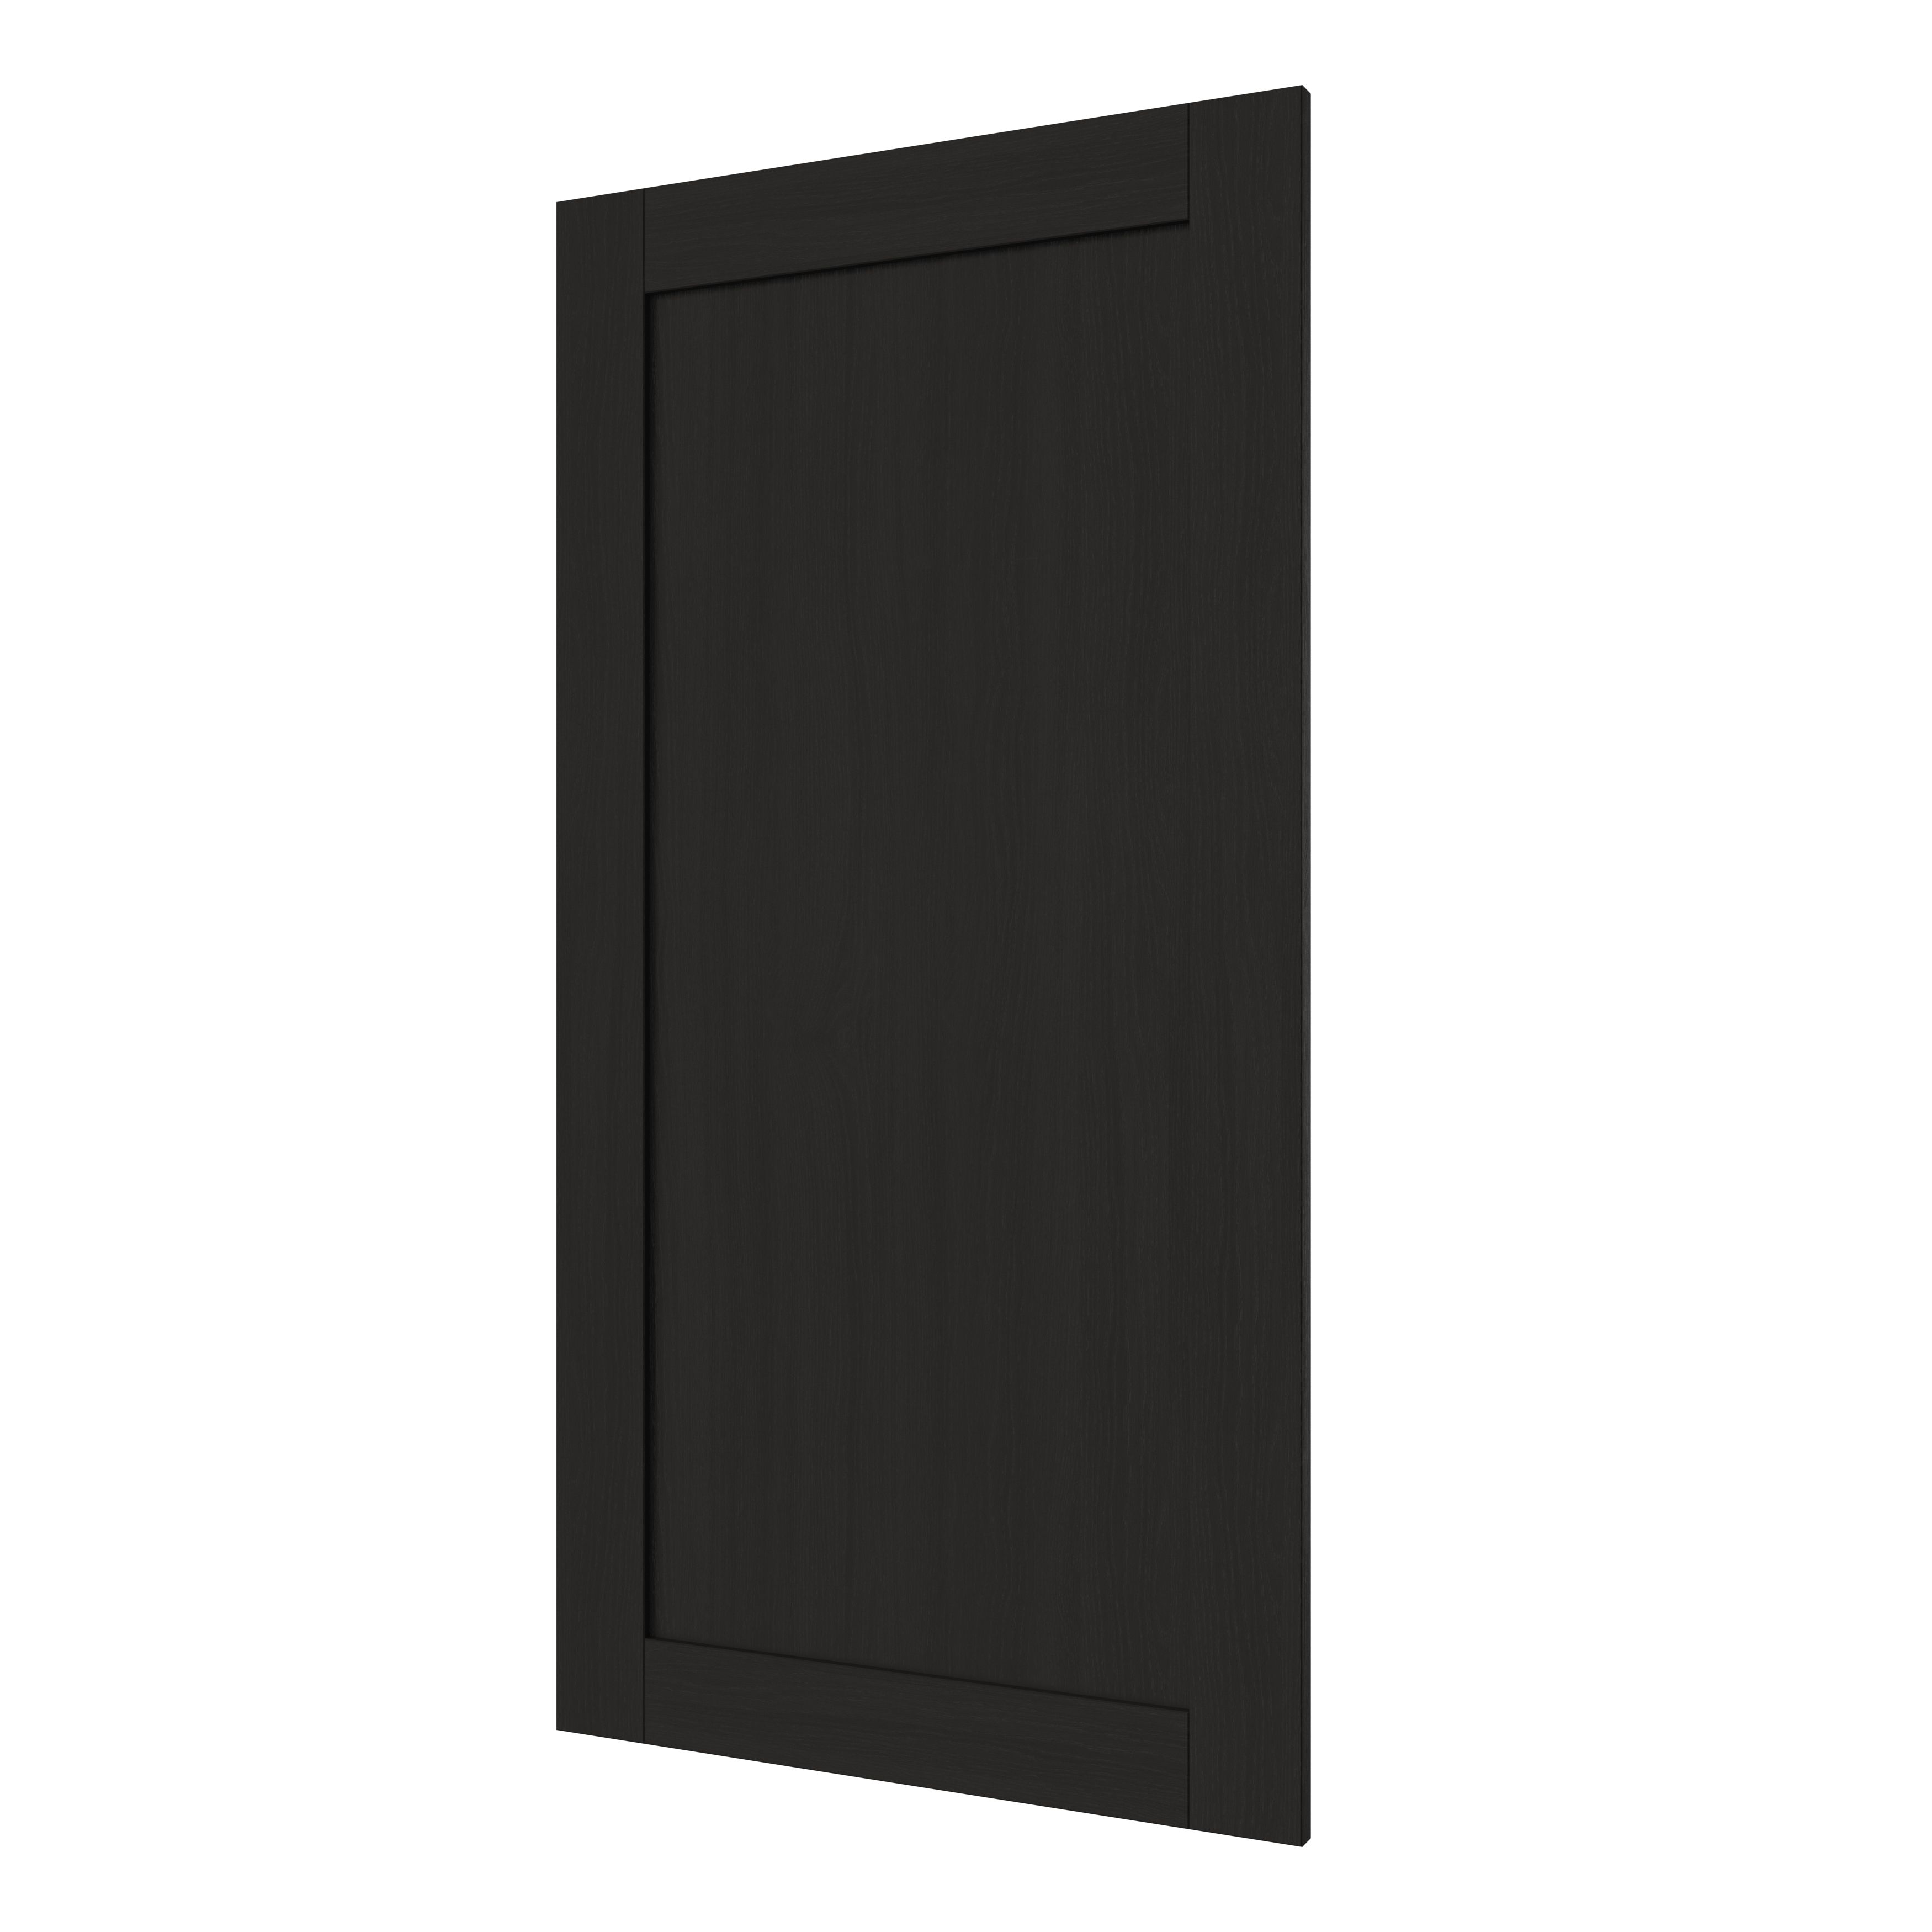 GoodHome Verbena Matt charcoal shaker 50:50 Tall larder Cabinet door (W)600mm (H)1181mm (T)20mm